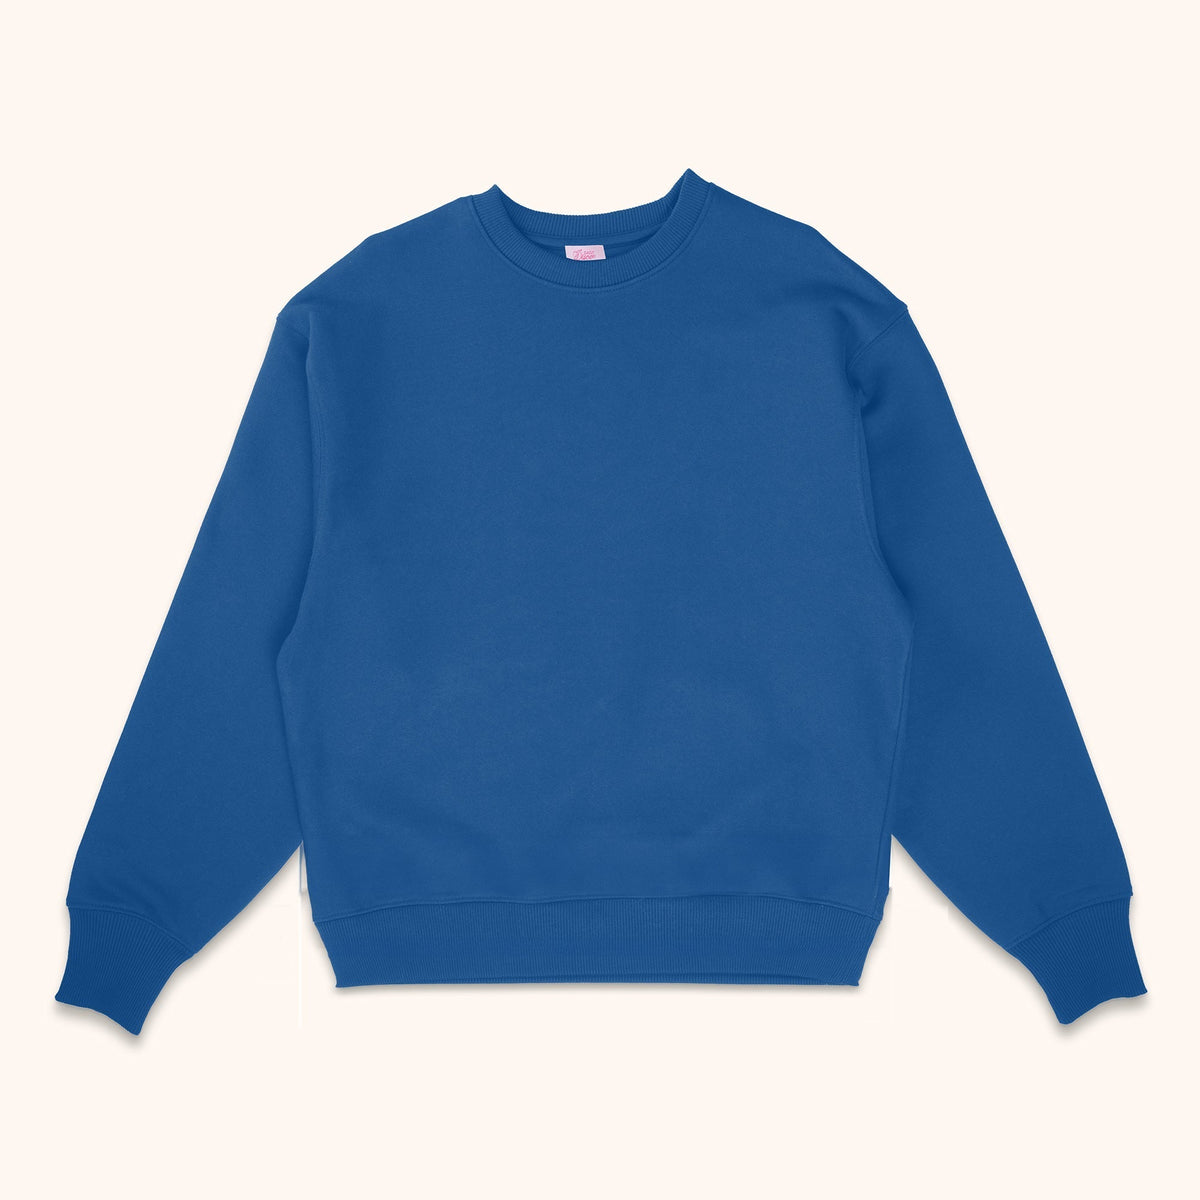 Custom Team Sweatshirt with Embroidered Megaphone